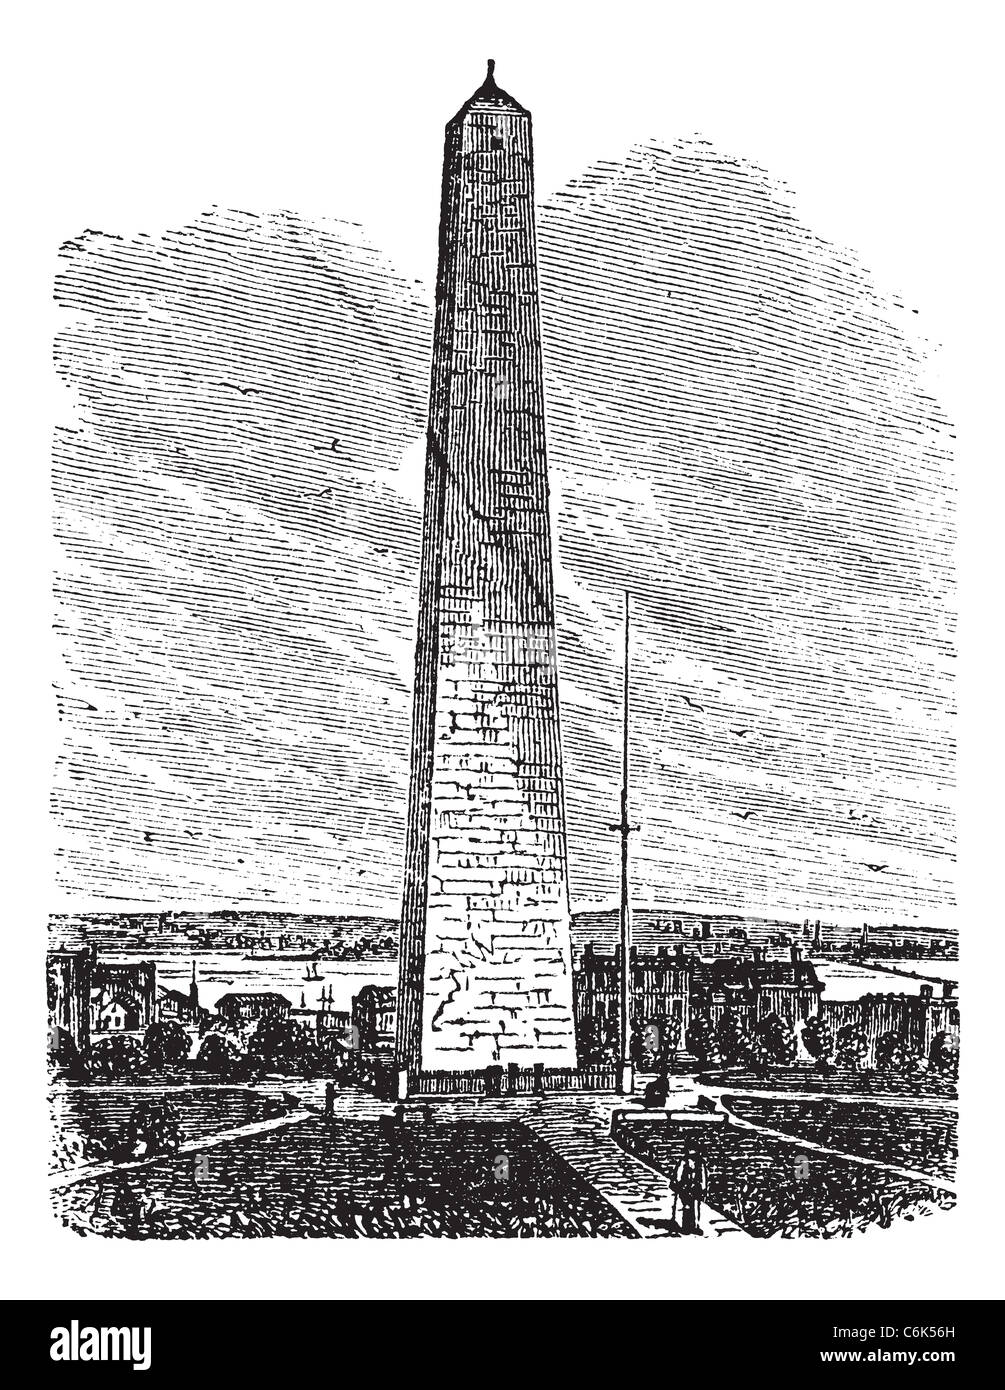 Bunker Hill Monument, old engraved illustration of Bunker Hill Monument, Charlestown, Massachusetts, 1890s. Stock Photo